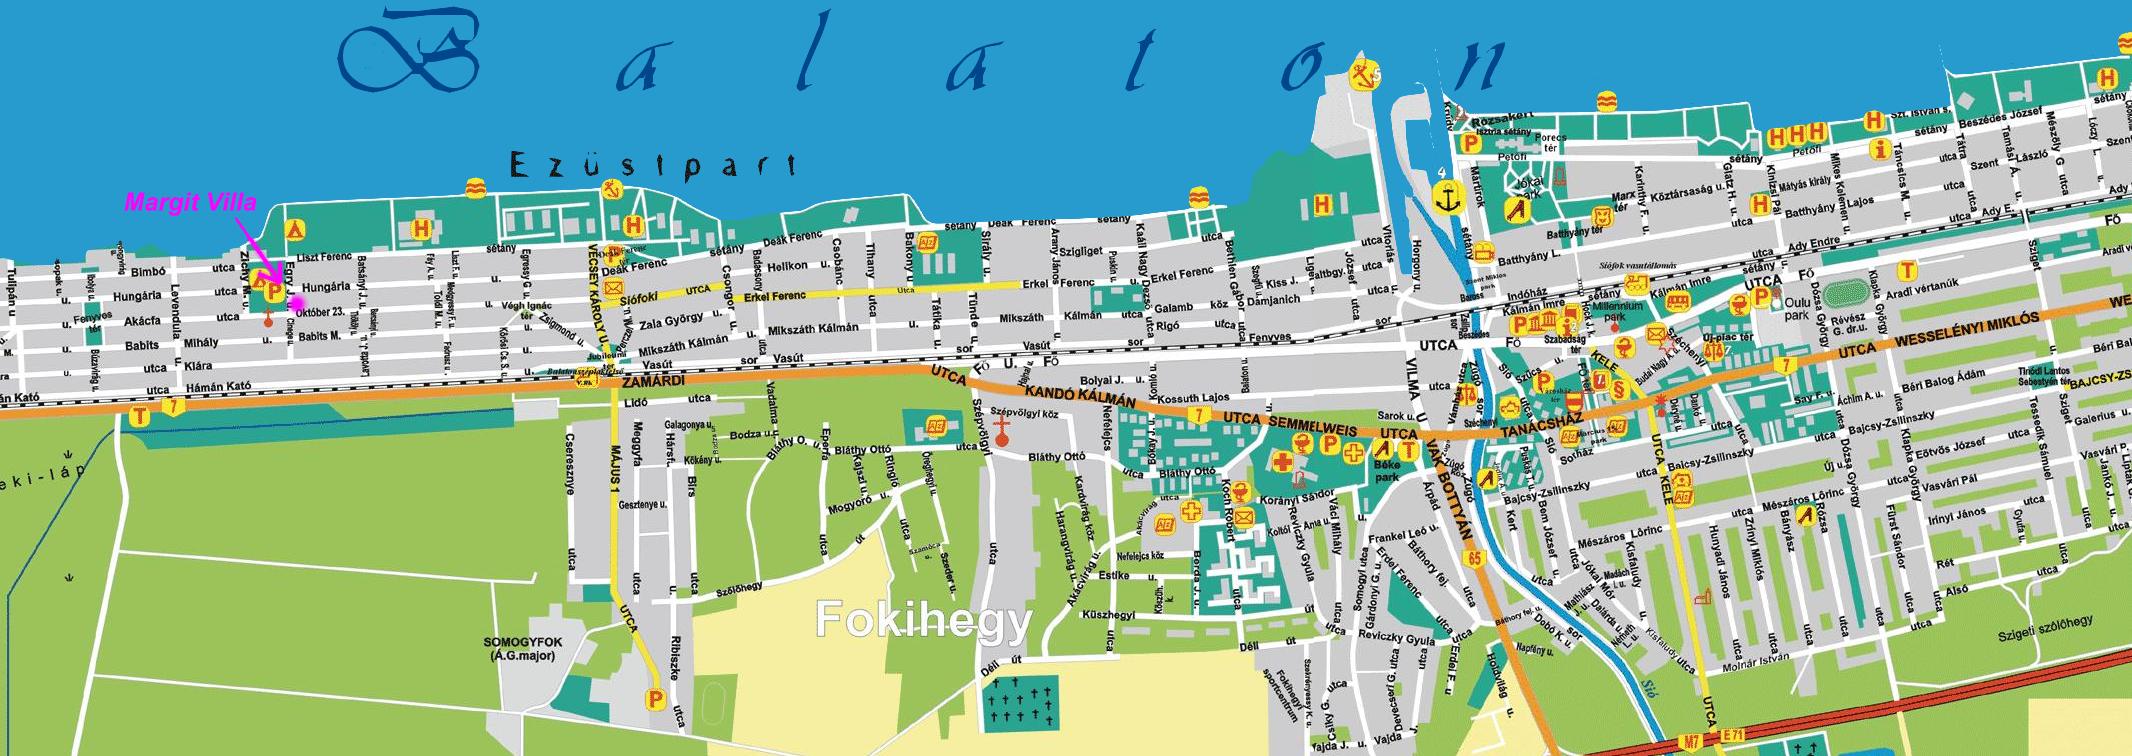 térkép siófok Online térképek: Siófok interaktív térkép térkép siófok